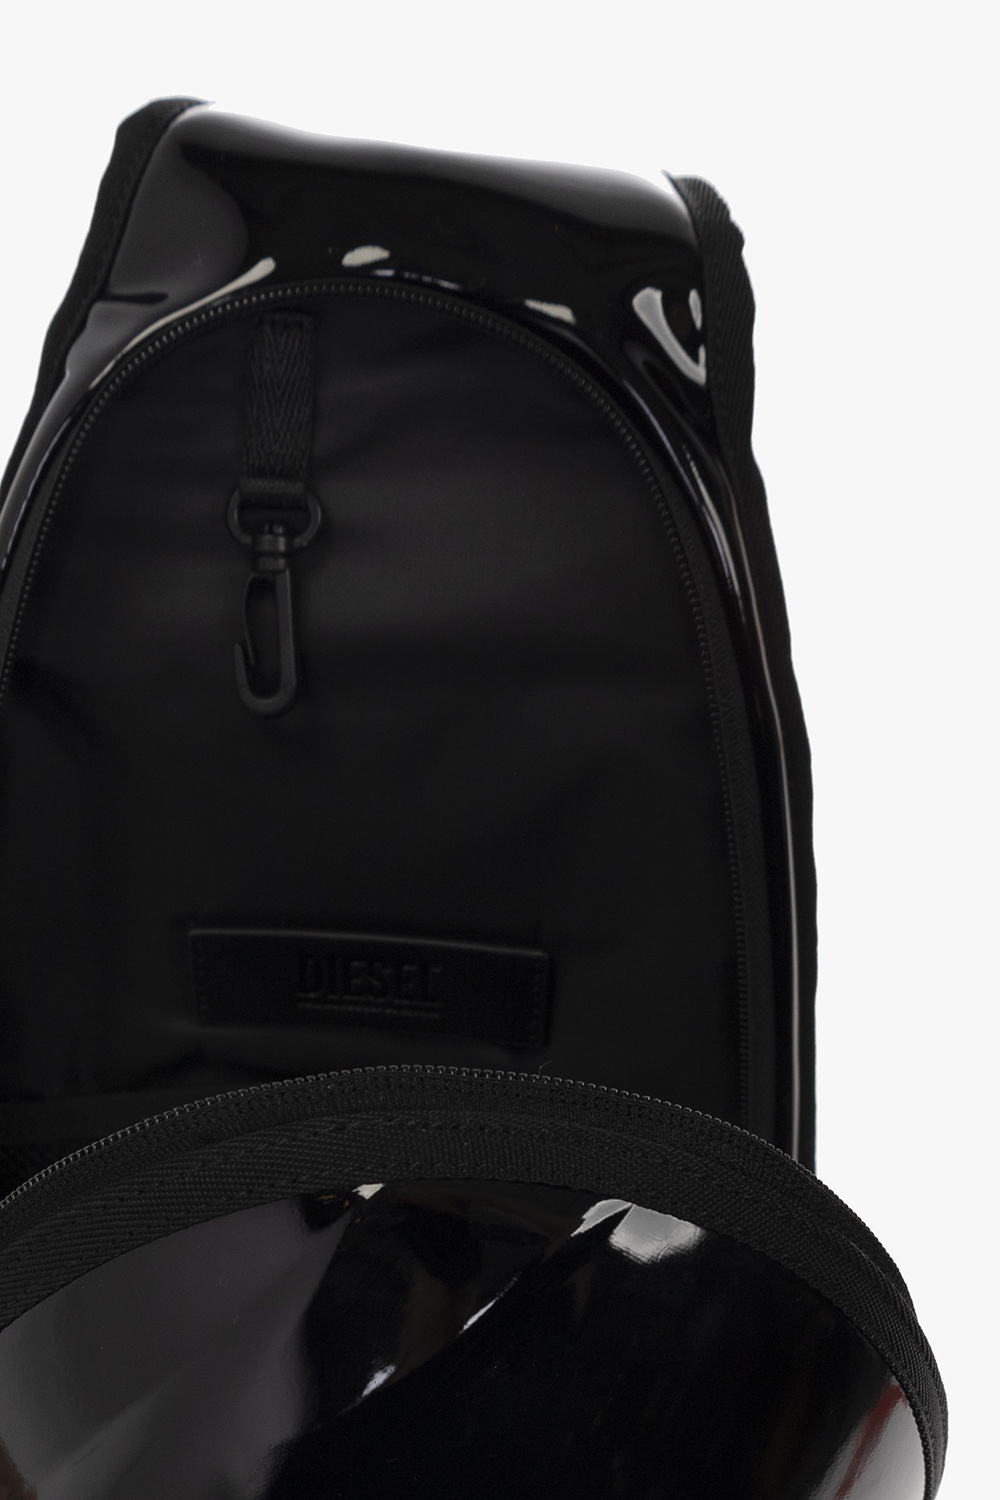 POD SLING' one - Black '1DR - Hermès 2004 pre-owned Evelyne PM Vibrato shoulder  bag - shoulder backpack Diesel - Tgkb5Shops Canada